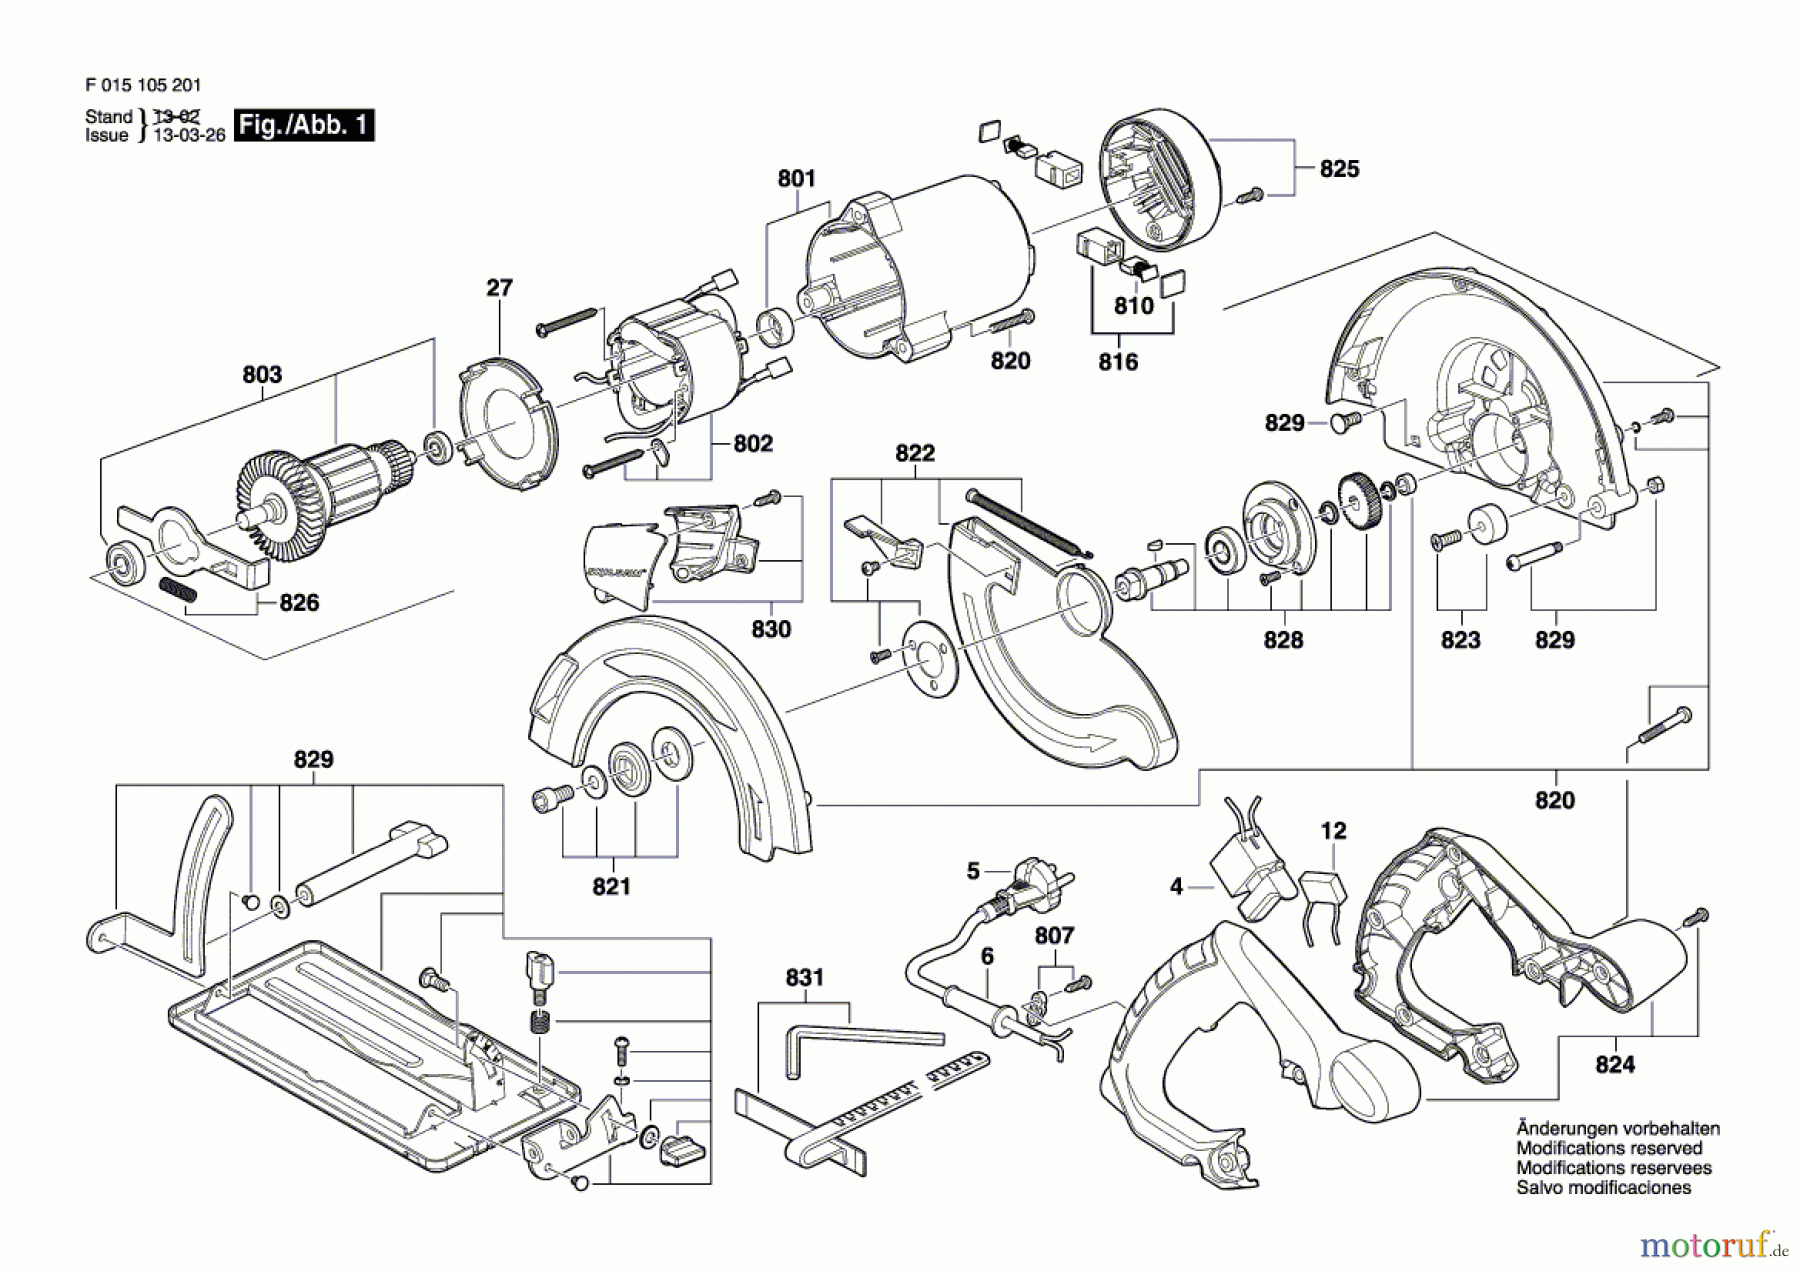  Bosch Werkzeug Handkreissäge 1052 Seite 1